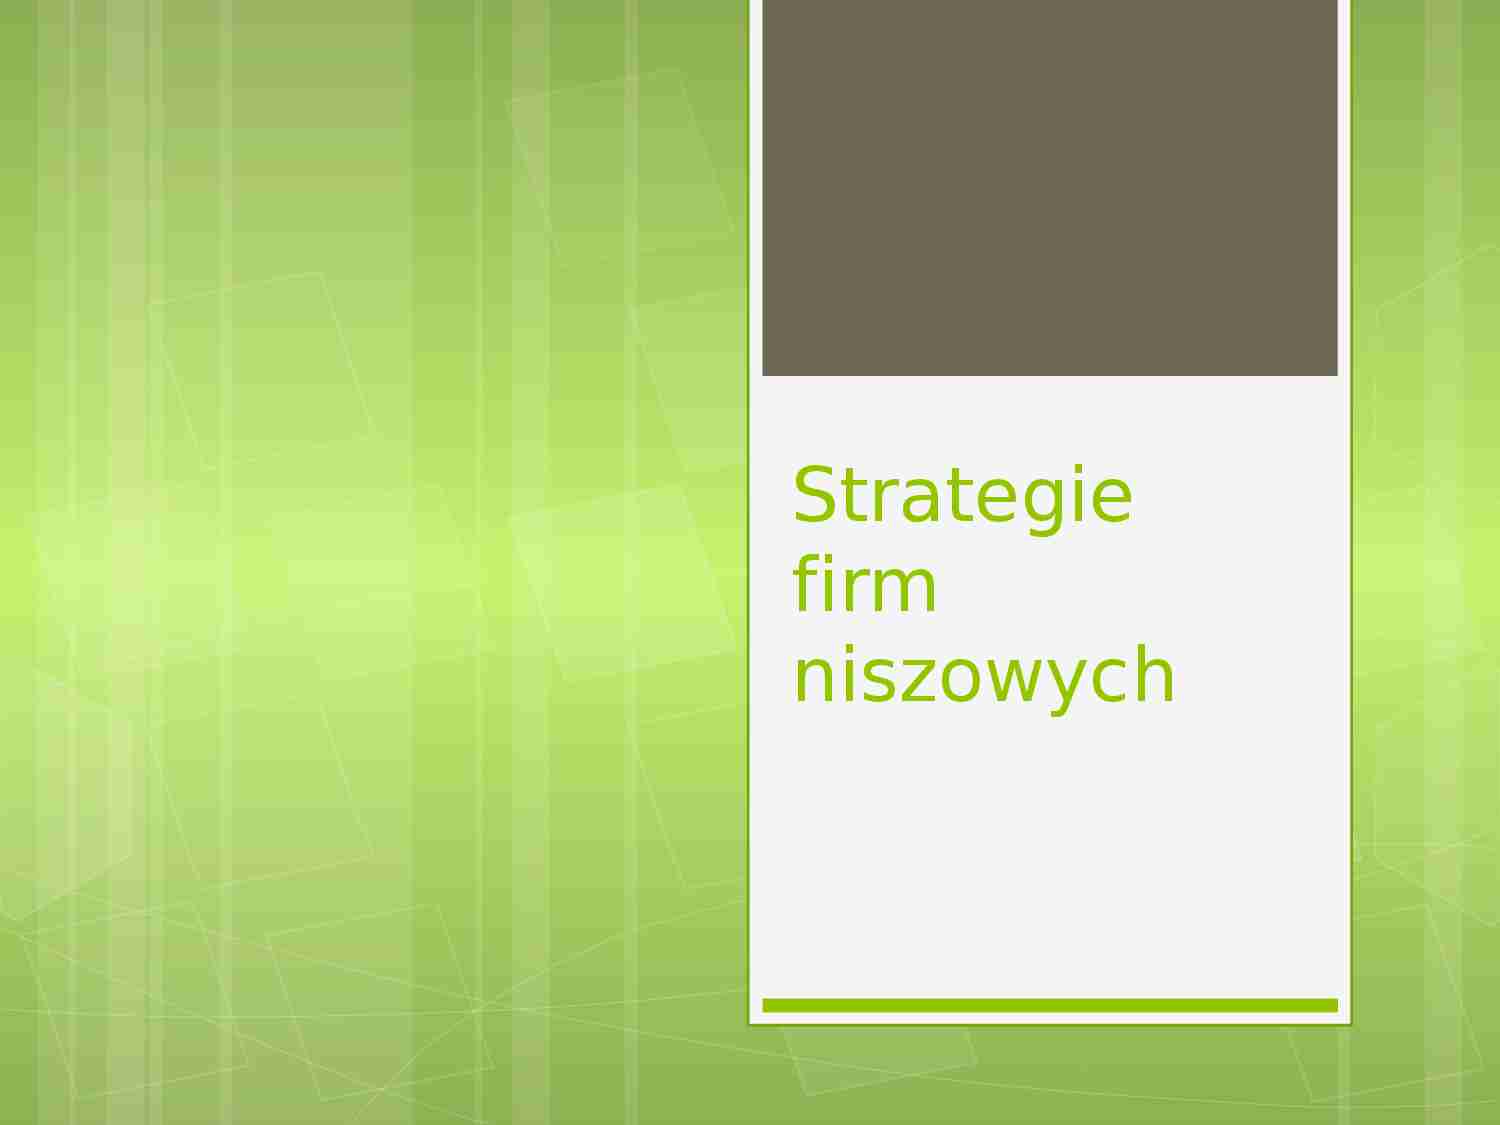 Strategie firm niszowych - strona 1